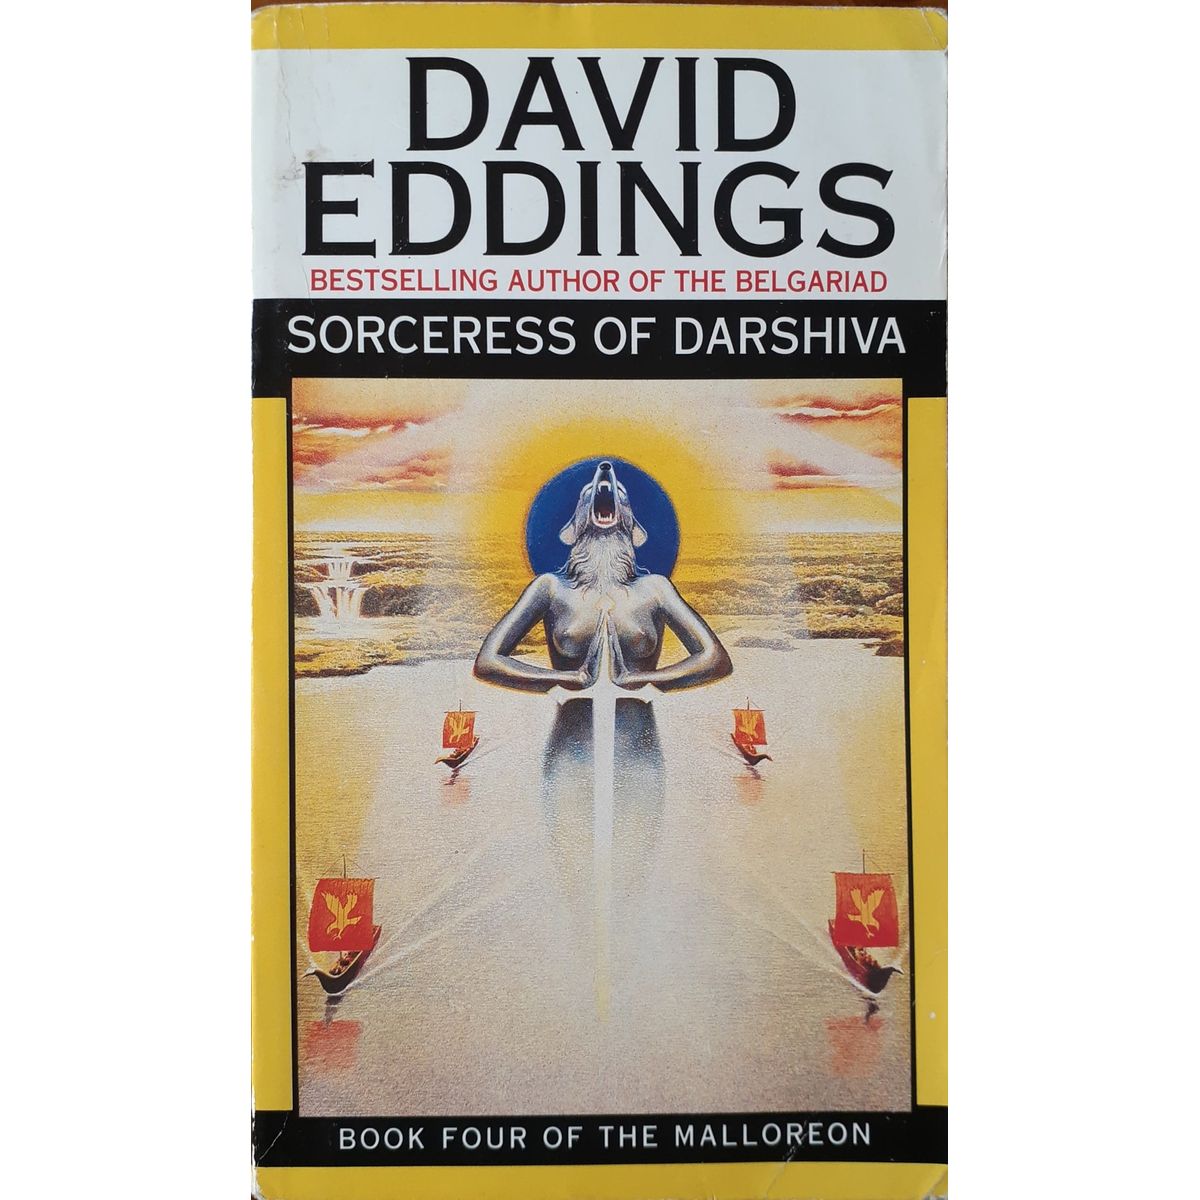 ISBN: 9780552130202 / 0552130206 - Sorceress of Darshiva by David Eddings [1995]